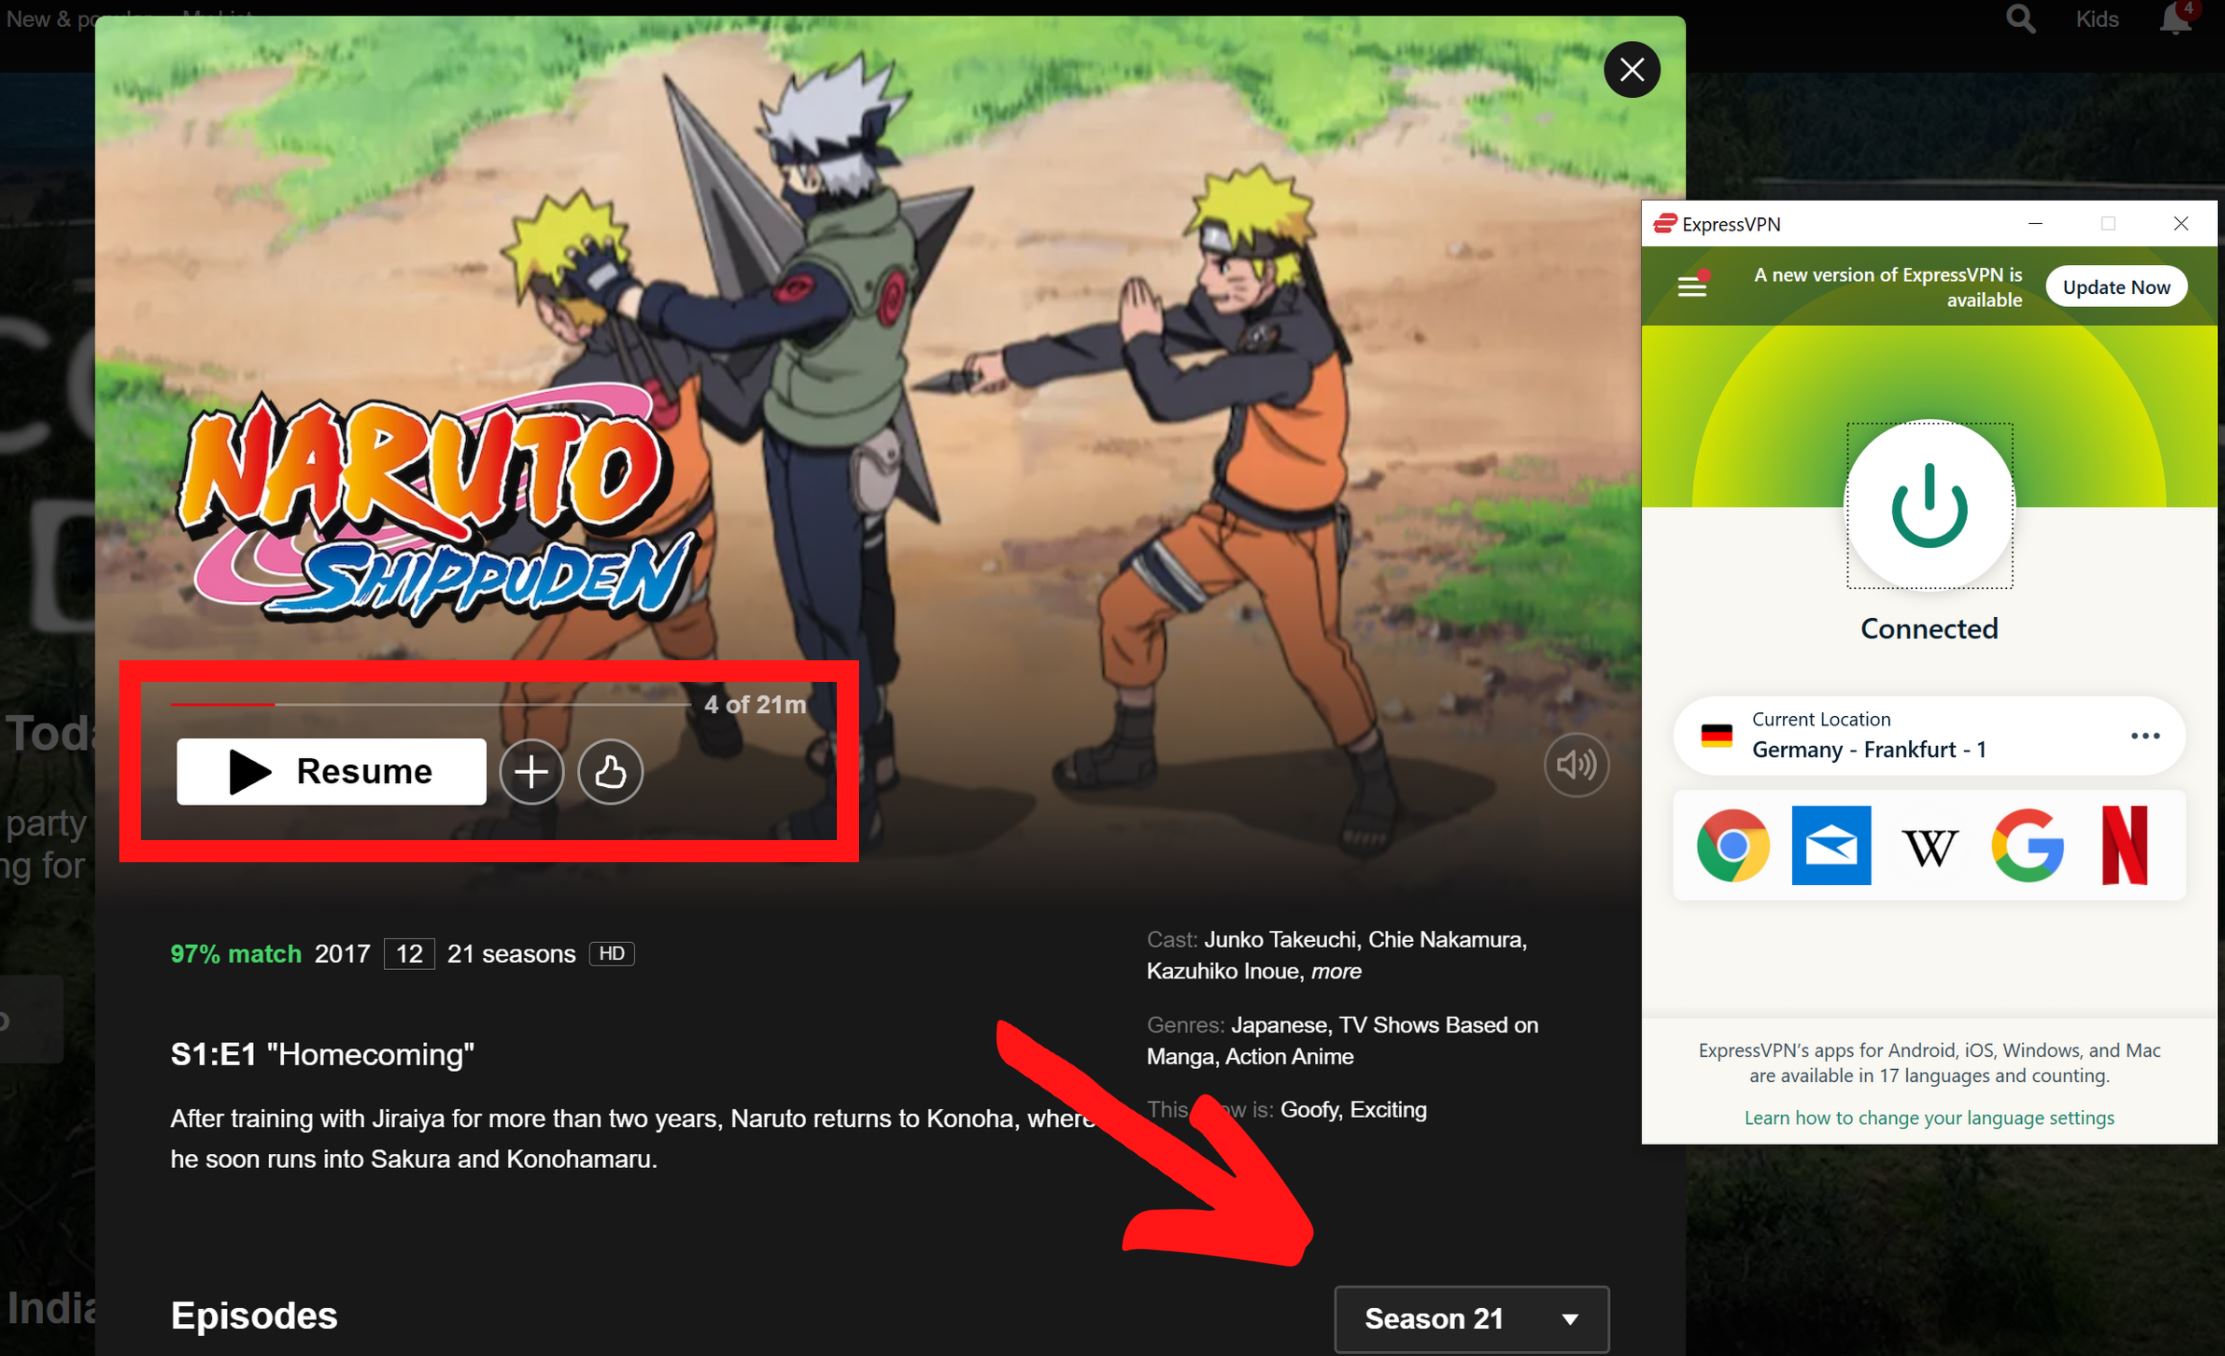 Naruto Shippuden Netflix